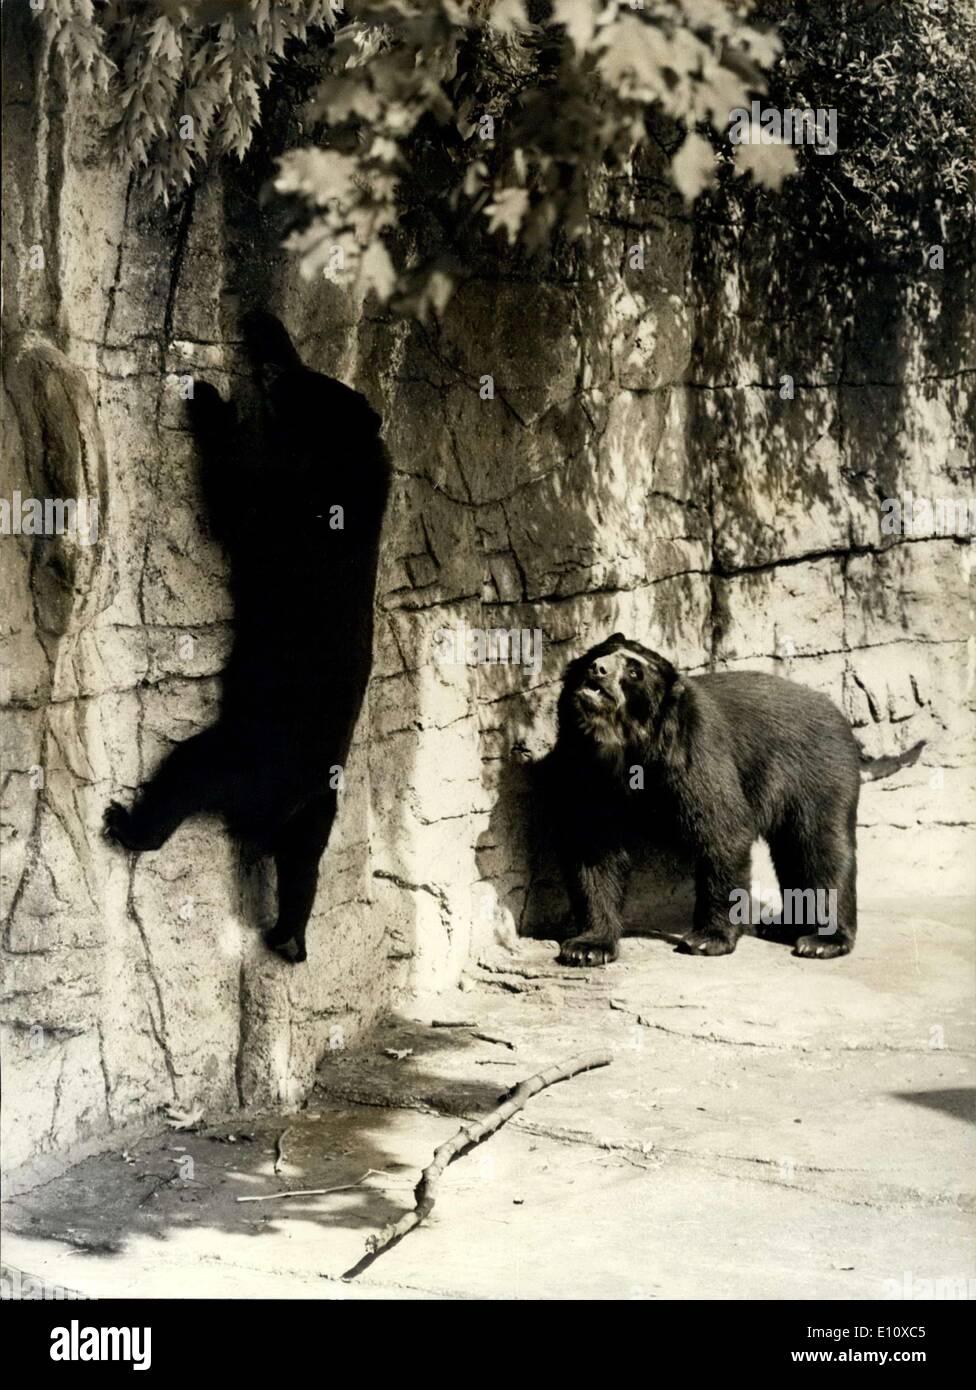 Juillet 23, 1974 - Guide de l'ours... Quand il s'agit de temps d'alimentation, les animaux au zoo de Bâle ne peut pas se plaindre, mais si vous voulez quelque chose de bien spécial, alors vous devez obtenir par vous-même ; Tana, les deux ans, l'ours a développé sa a remporté le libre-service, très rarement vu dans d'autres ours. Elle a a appris à utiliser un long bâton pour récupérer les feuilles d'un érable. Mais tous ses amis peuvent faire est de regarder avec envie, comme ils ne peuvent toujours pas obtenir le coup de lui. Avec toutes les pénuries alimentaires ces derniers temps, il pourrait être un moyen très utile d'avoir knack Banque D'Images